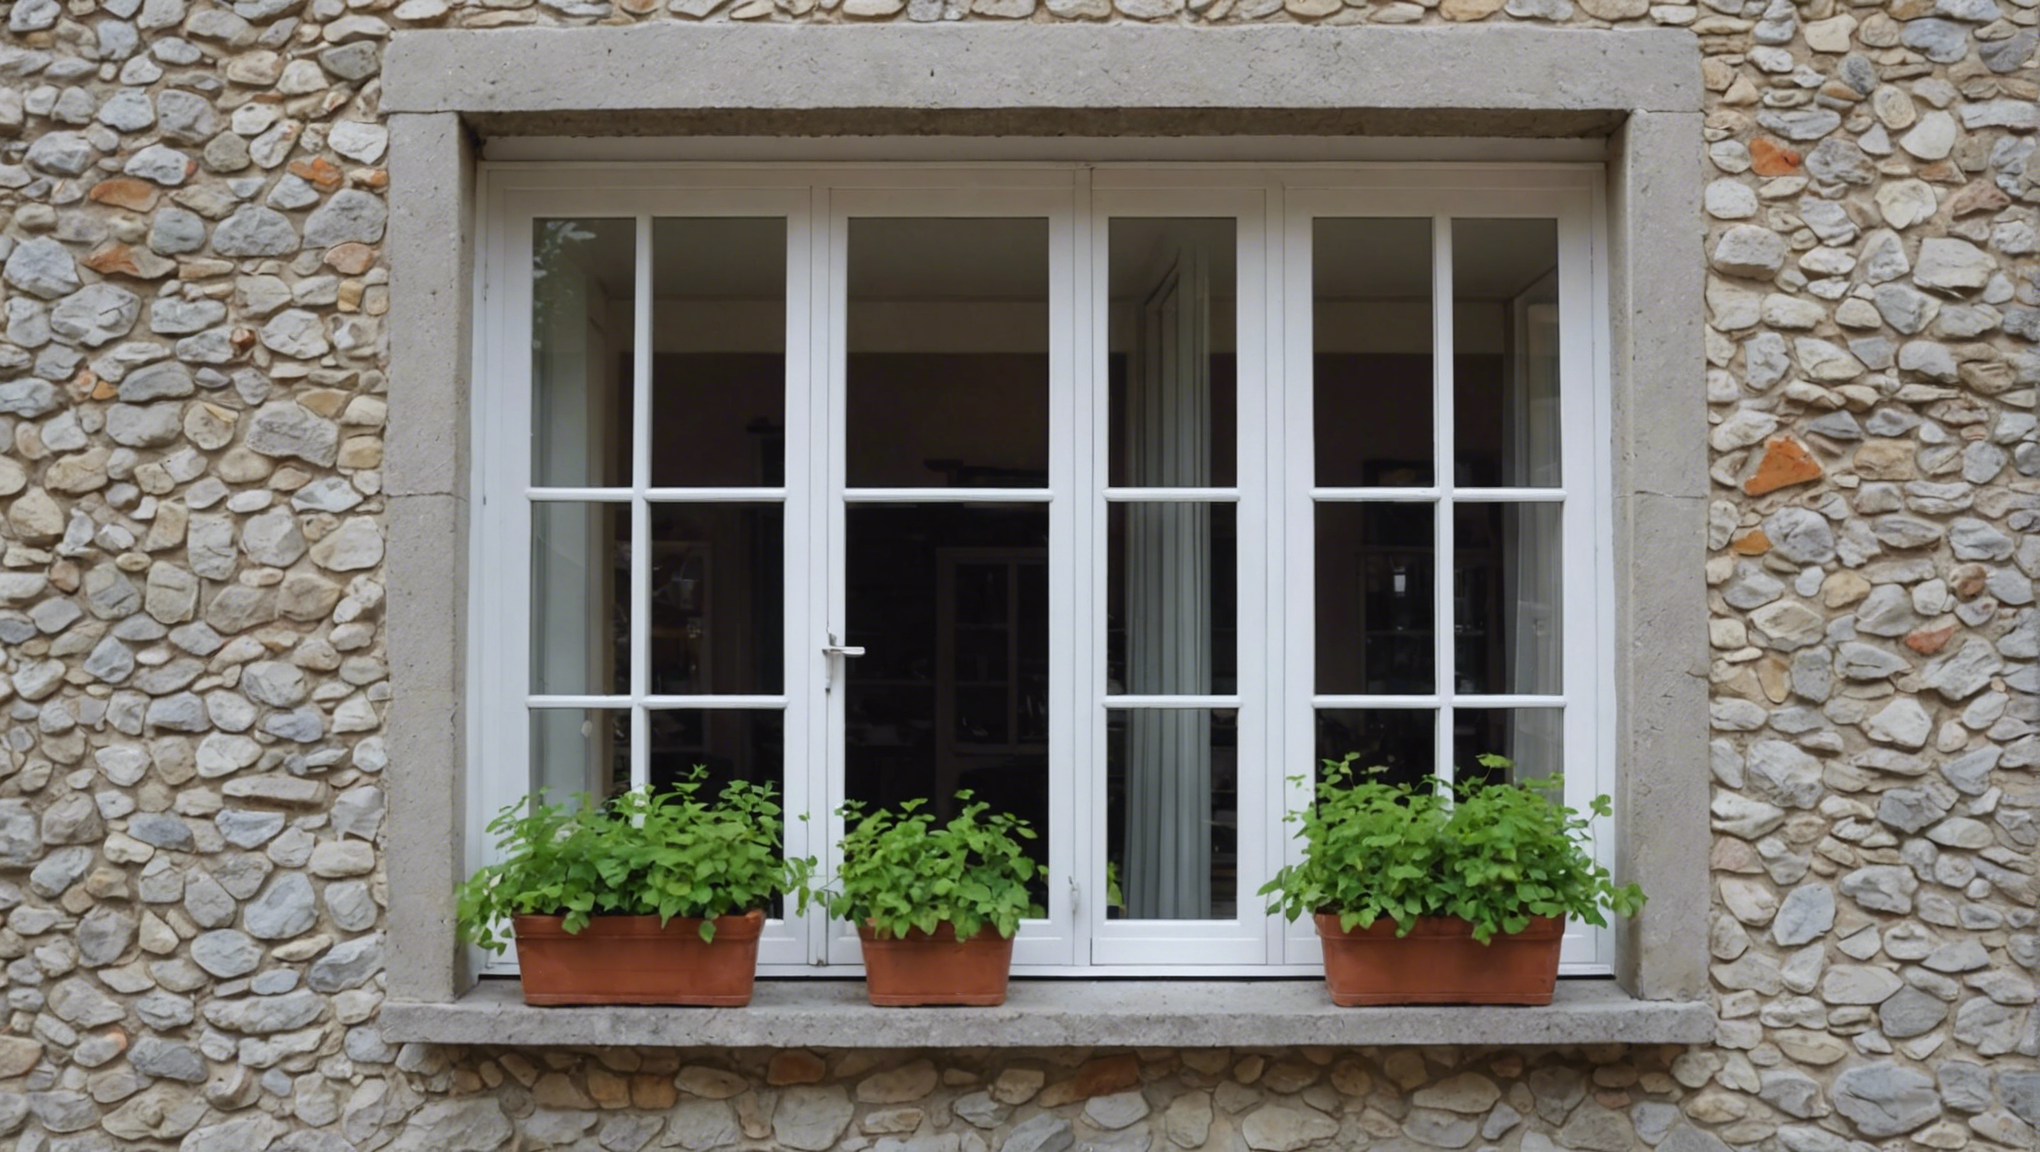 découvrez les avantages économiques et environnementaux des fenêtres en double vitrage et améliorez l'efficacité énergétique de votre maison.